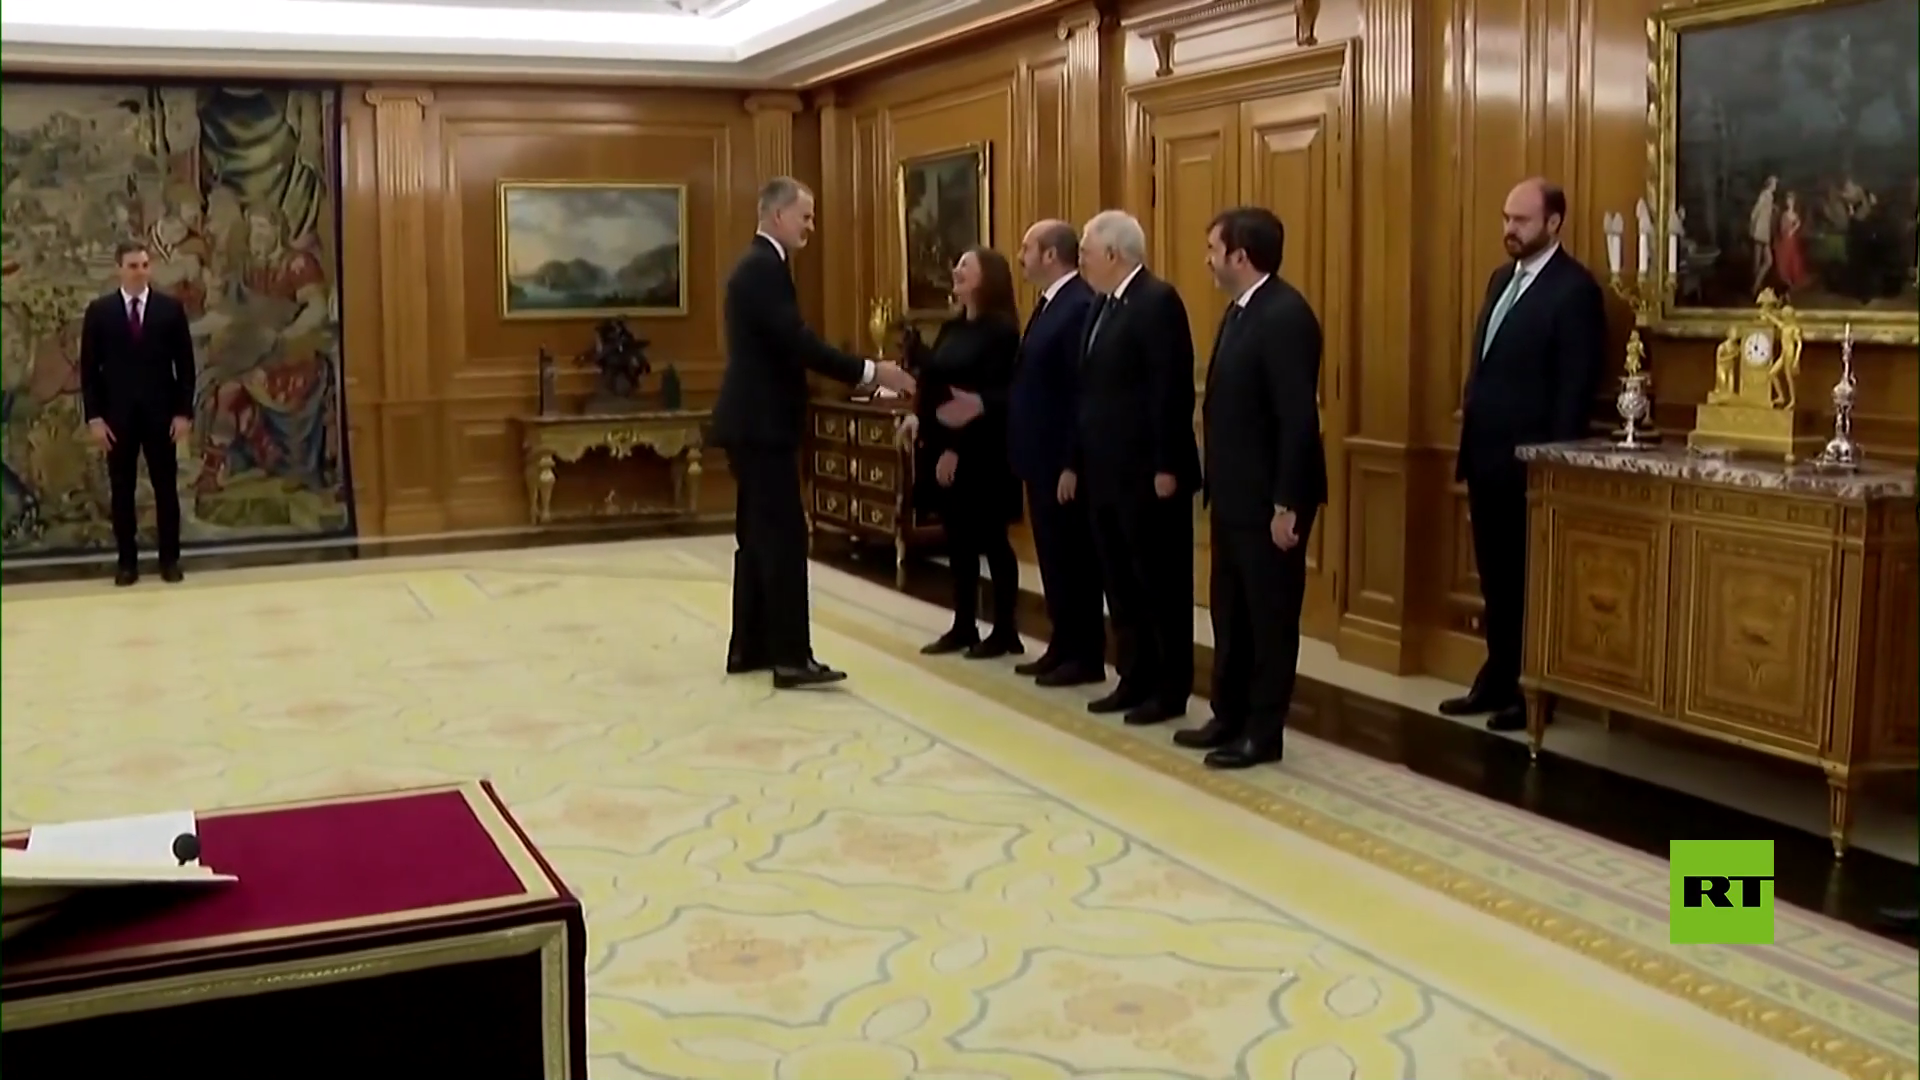 بالفيديو.. بيدرو سانشيز يؤدي اليمين رئيسا جديدا لوزراء إسبانيا أمام الملك فيليب السادس